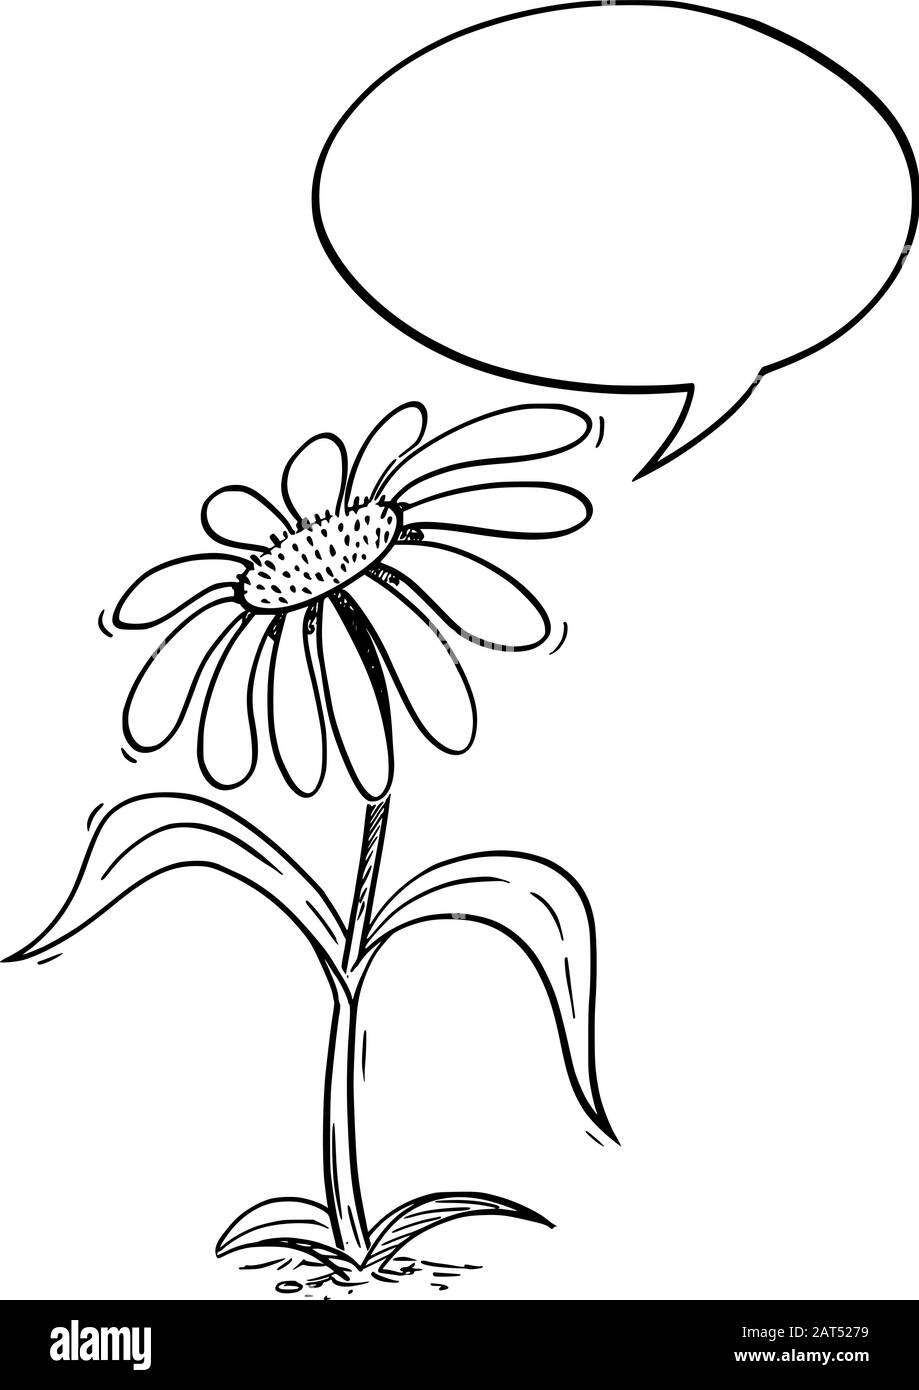 Illustrazione vettoriale del carattere di margherita flowering dei cartoni animati con la bolla del parlato. Ecologia o natura pubblicità o disegno di vendita. Illustrazione Vettoriale